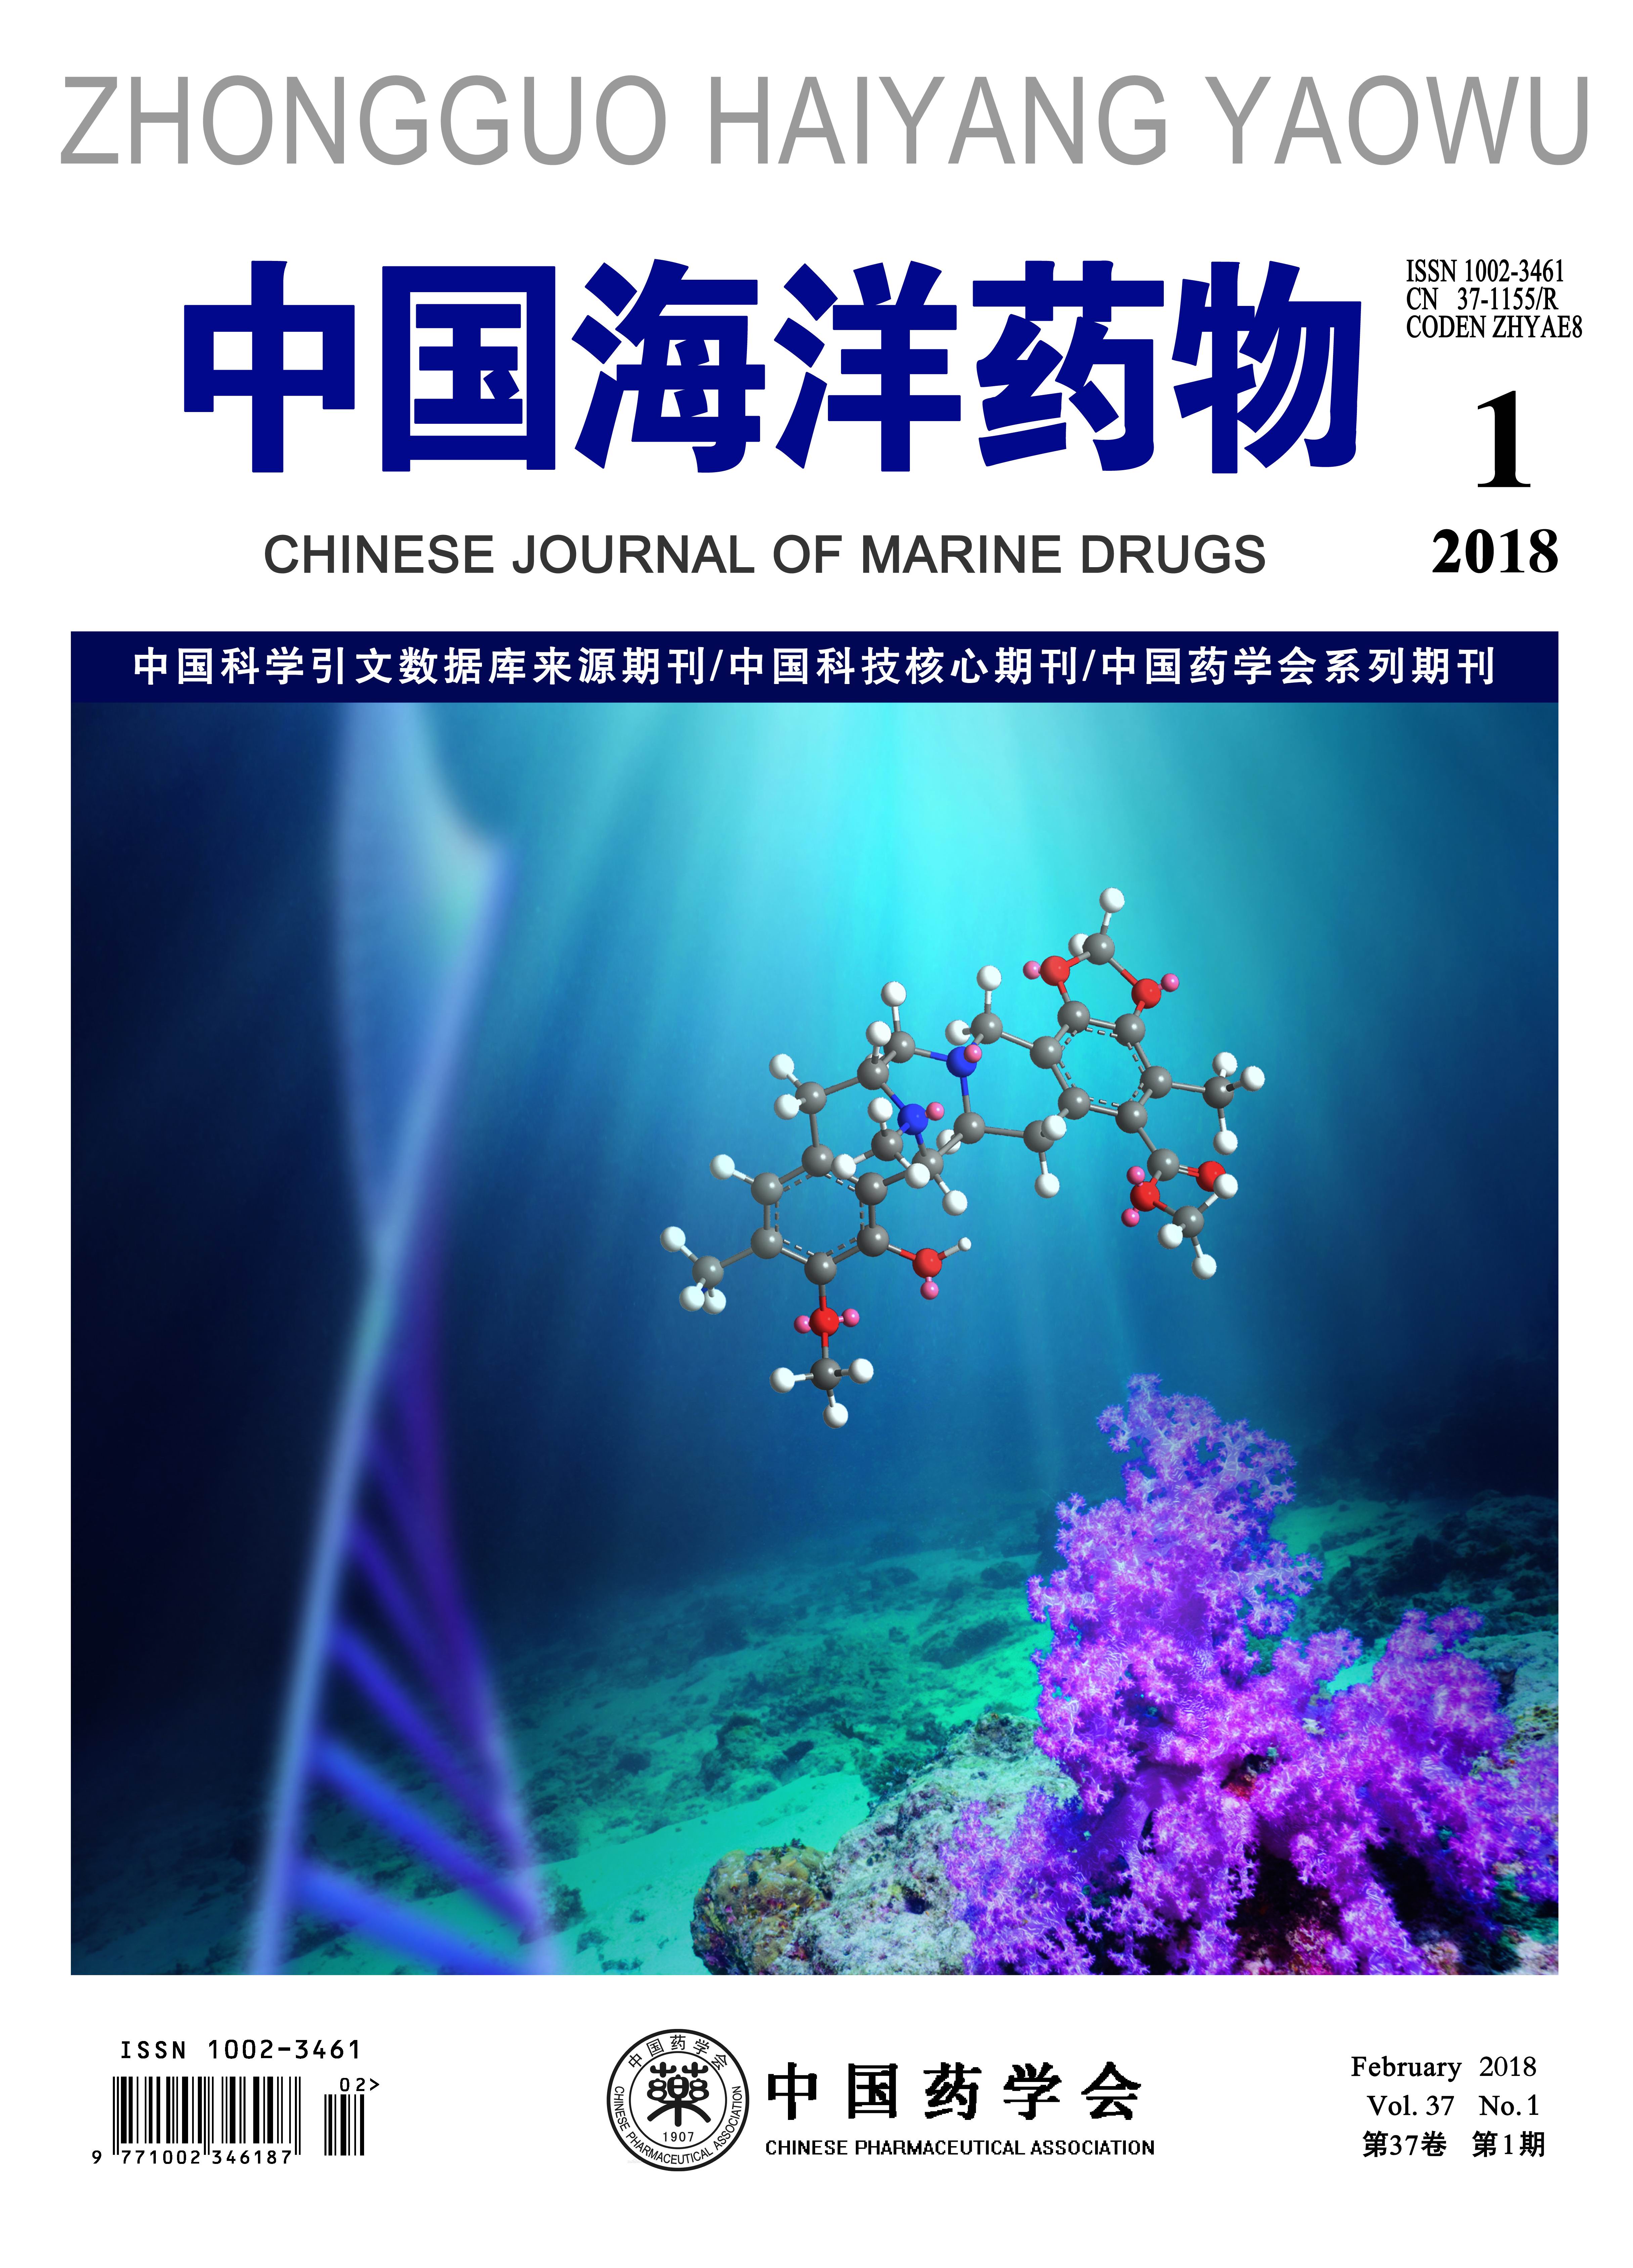 杂志创刊于1982年,是由中国科协主管,中国药学会主办,中国海洋大学